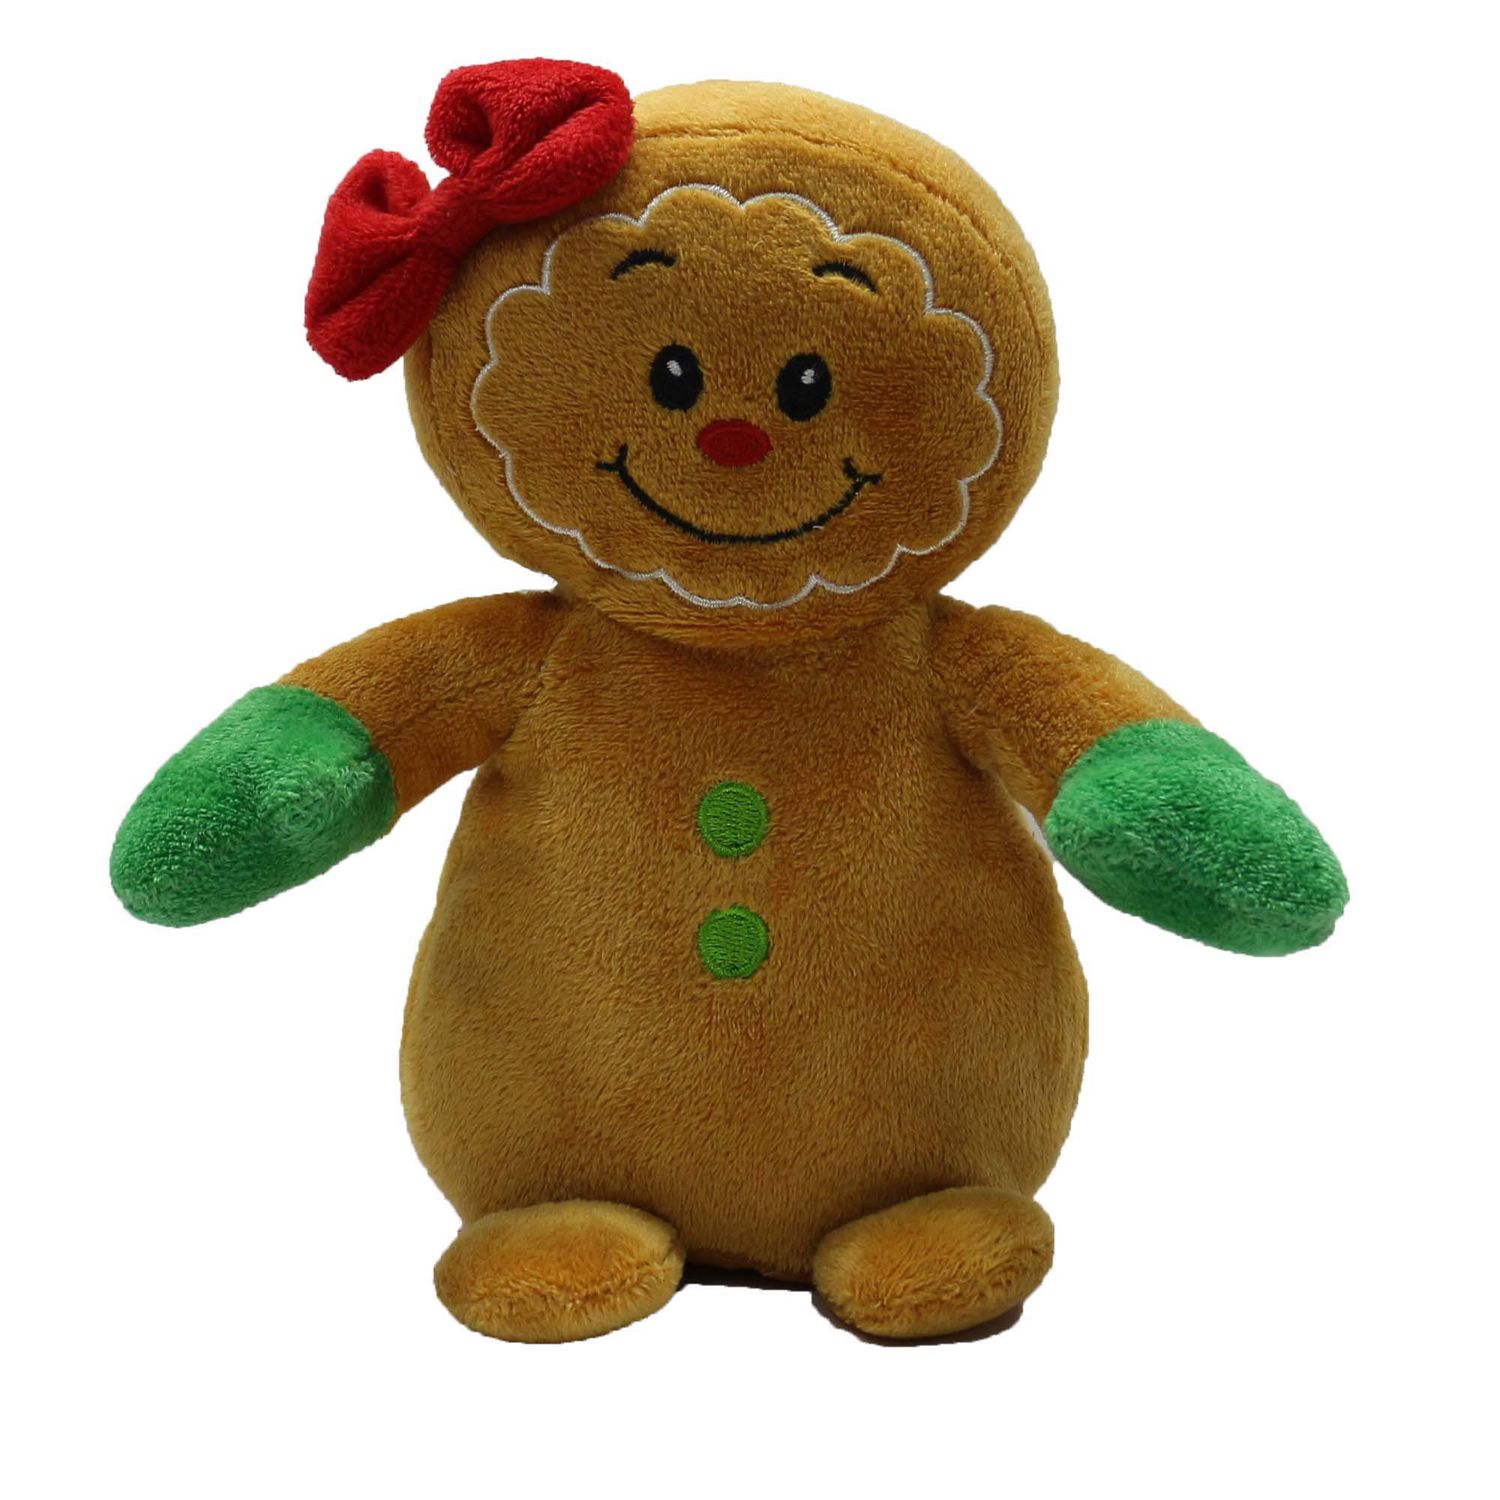 gingerbread man stuffed animal